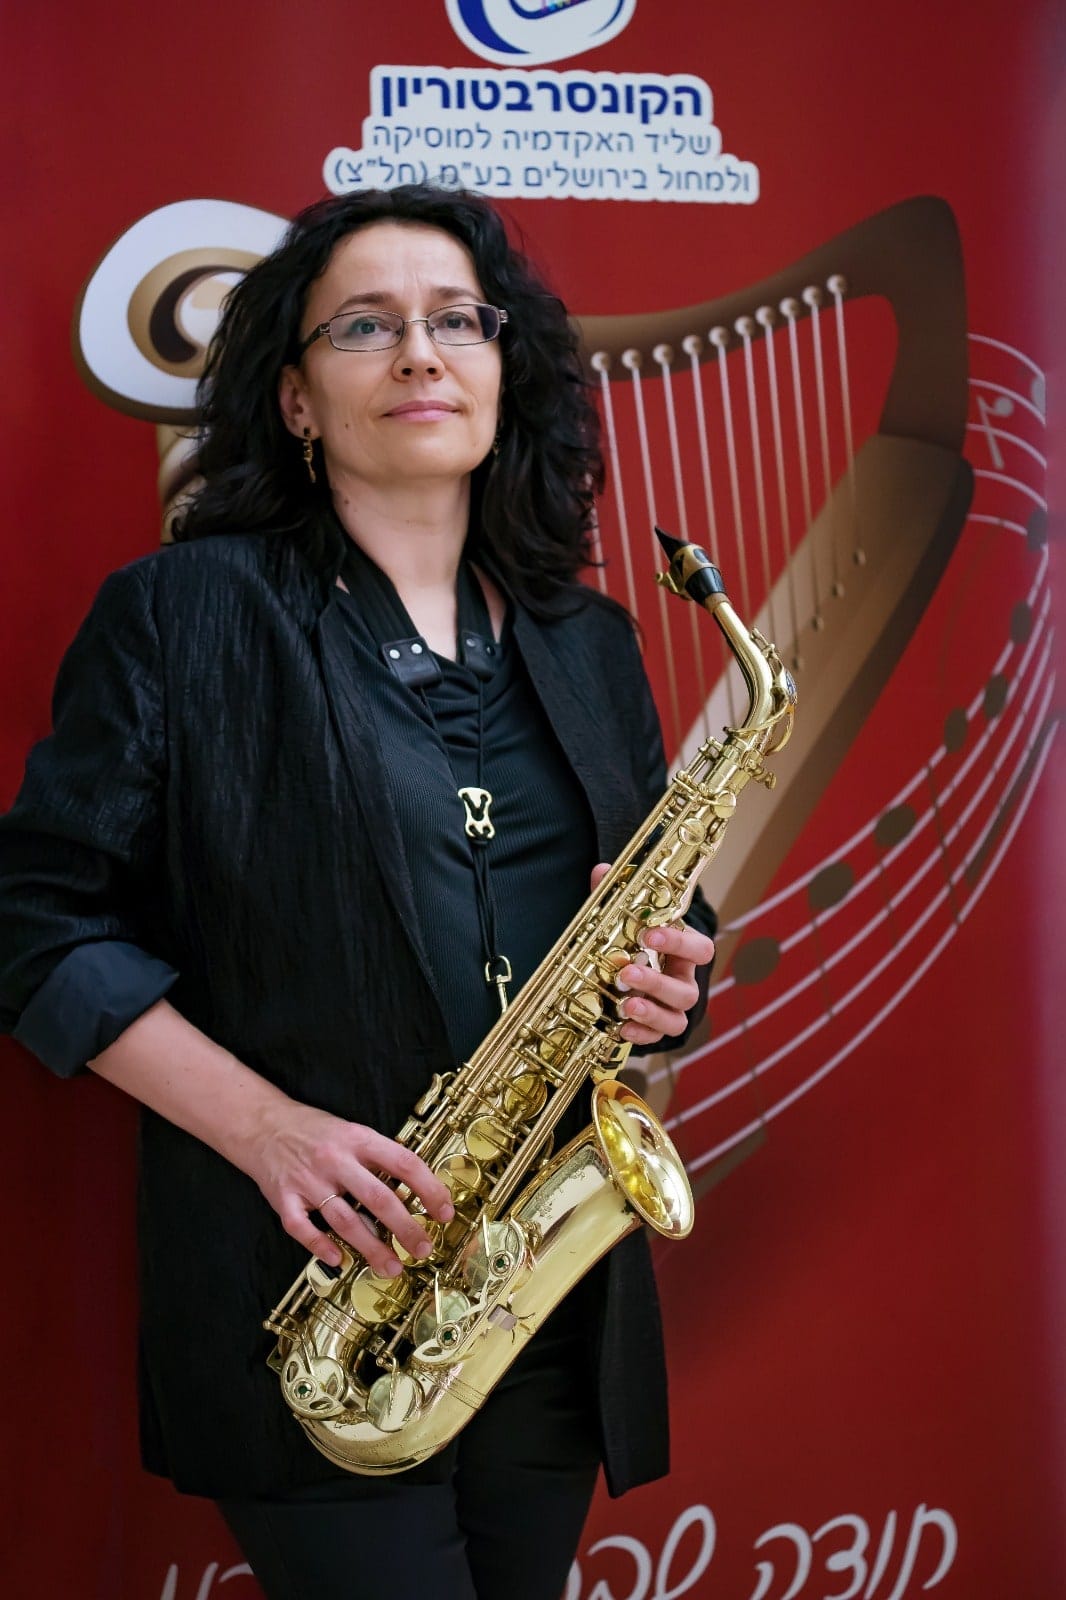 ילנה אודינצובה, מוזיקאית (צילום: אירינה פרודניקוב)